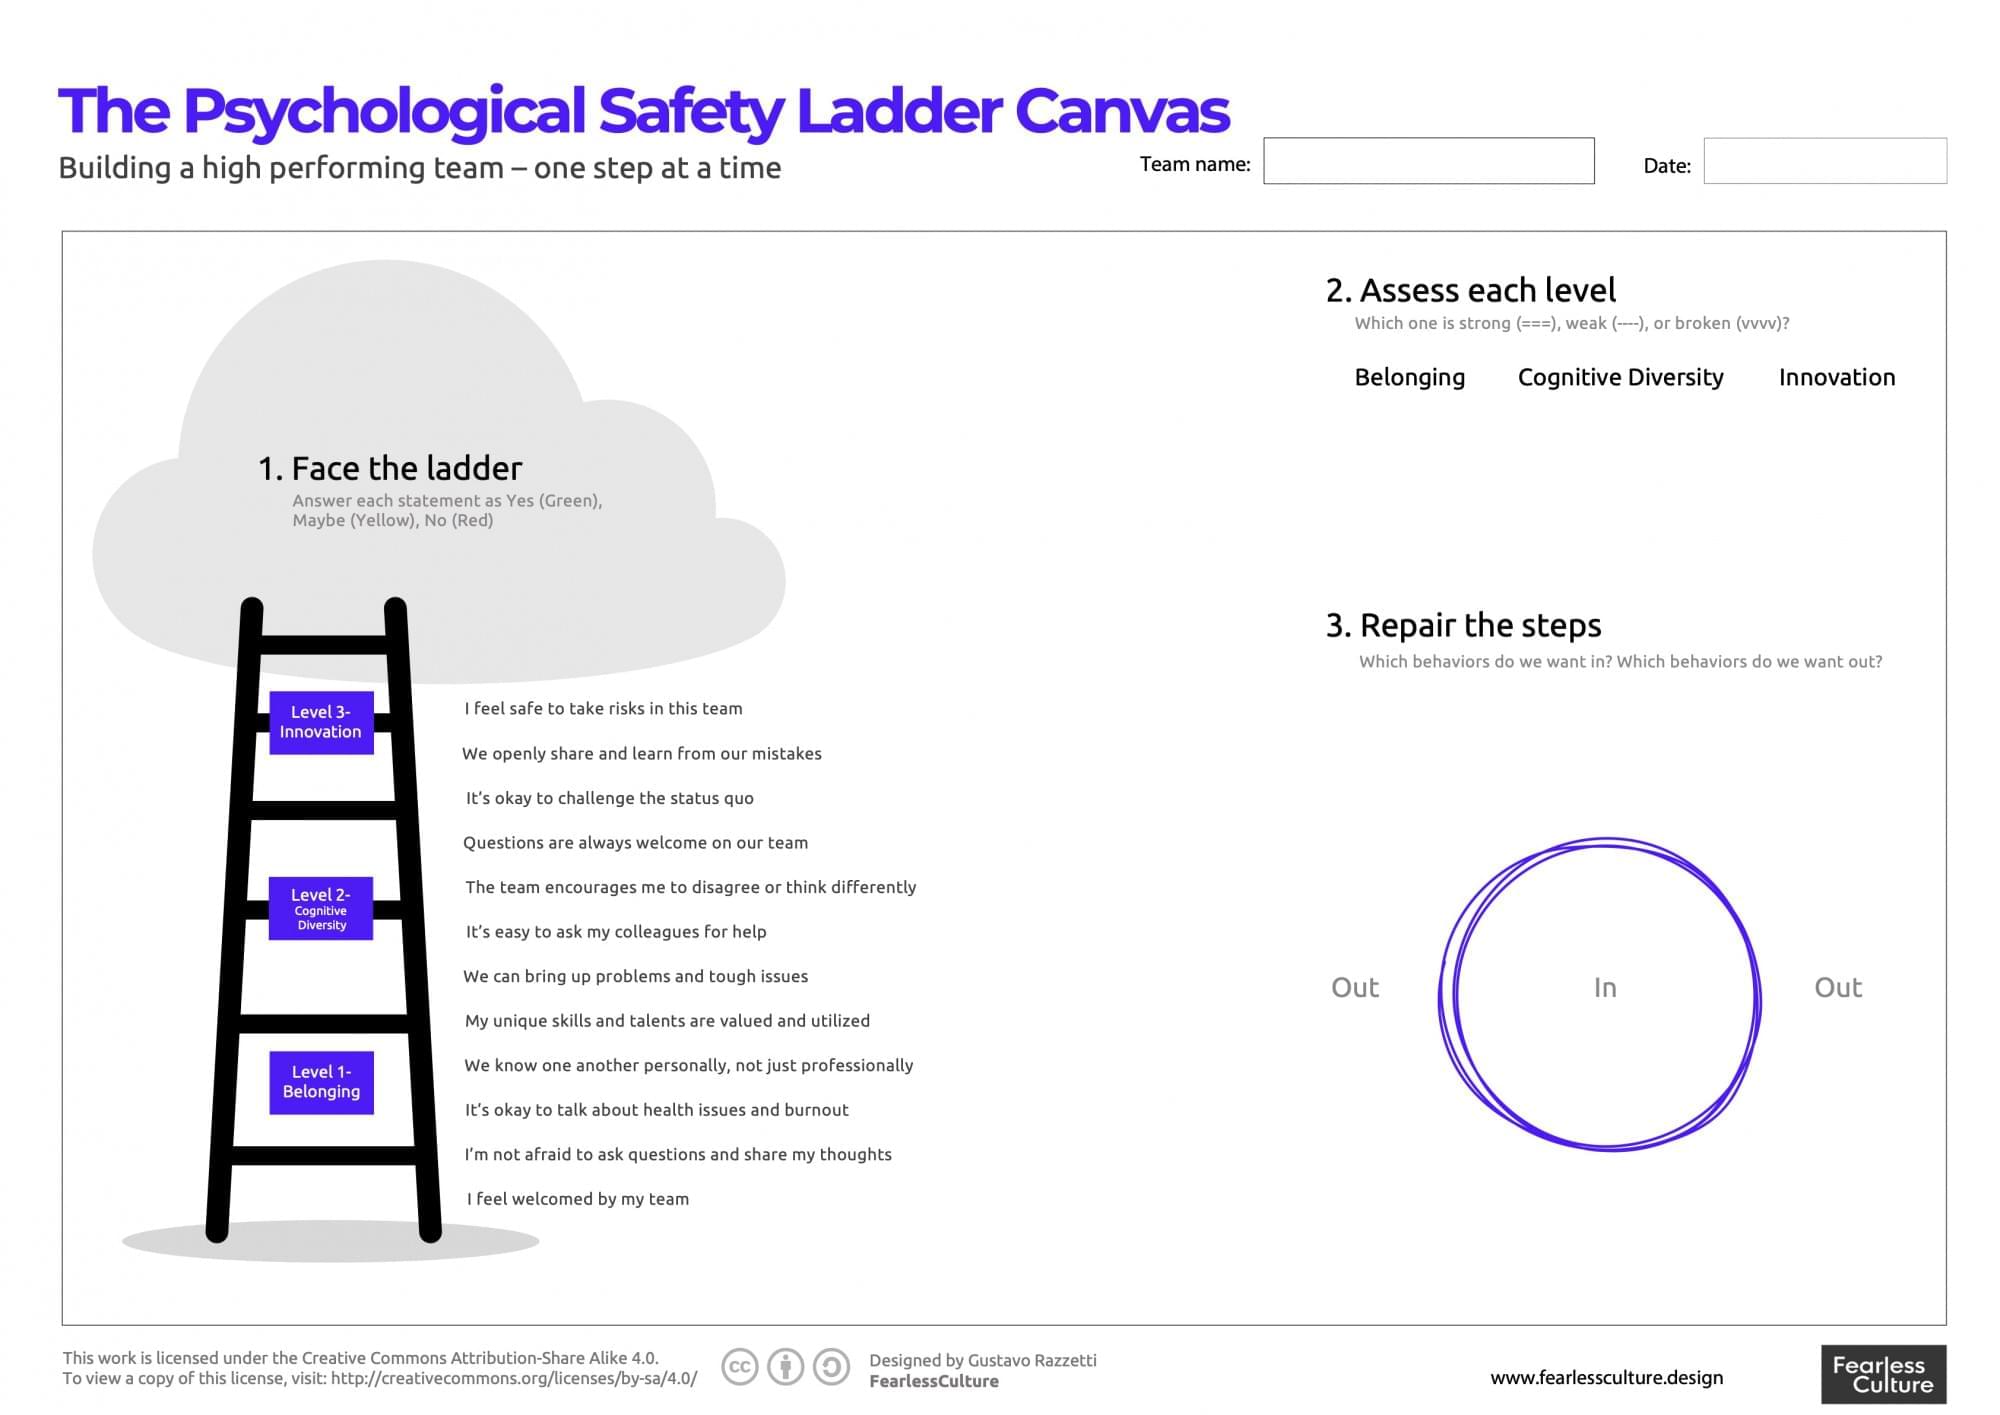 Visualization of the psychology safety ladder